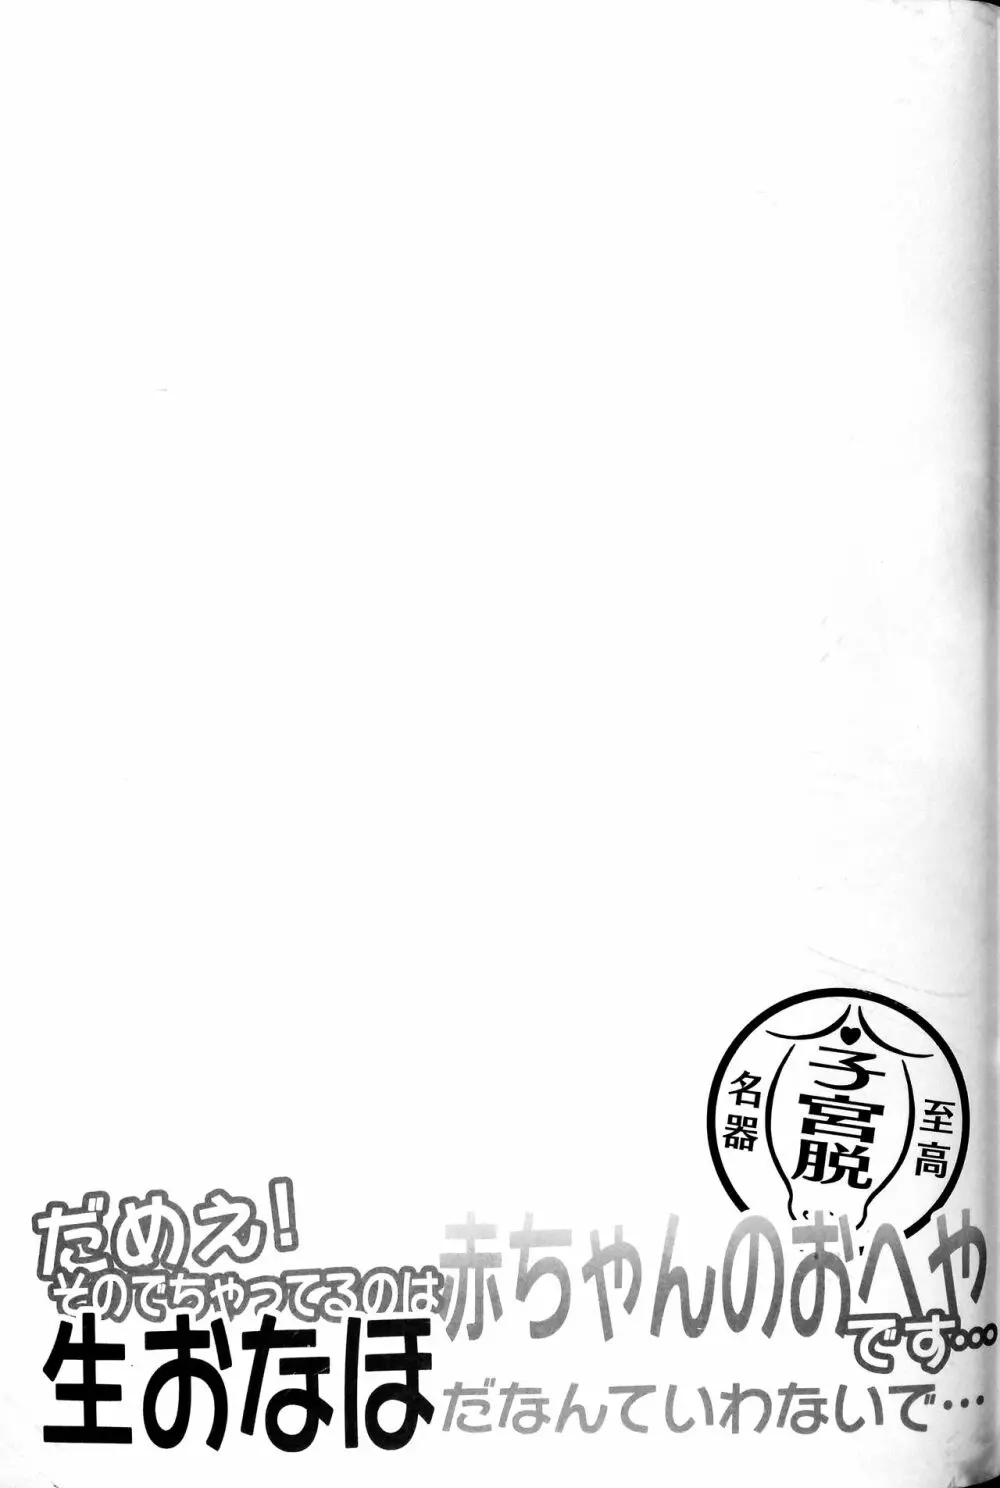 東方子宮脱合同誌2:だめぇ!そのでちゃってるのは赤ちゃんのおへやです…生おなほだなんていわないで… 138ページ